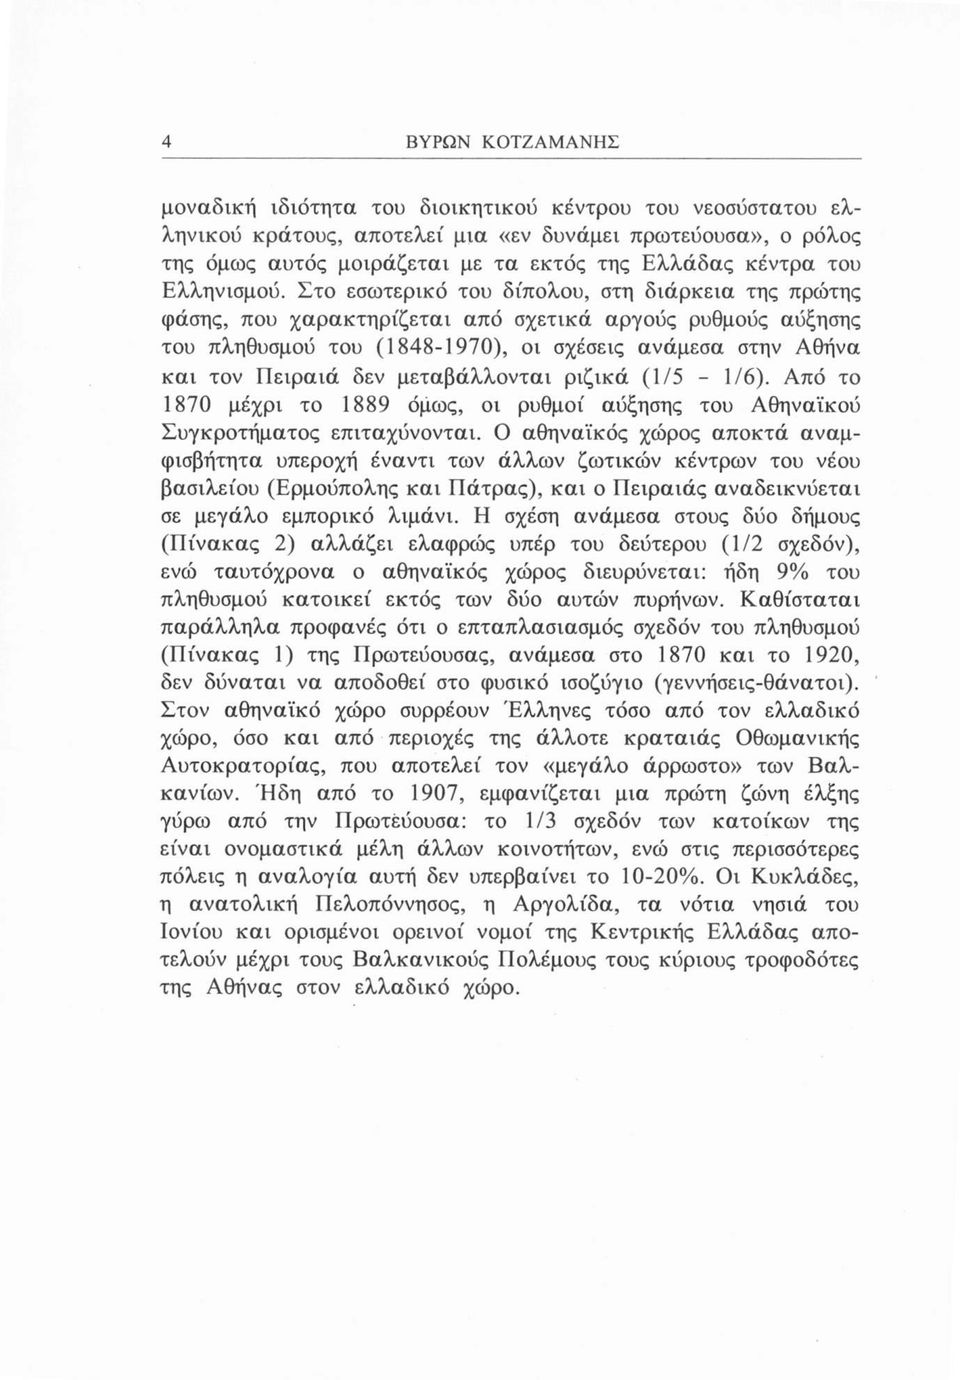 Στο εσωτερικό του δίπολου, στη διάρκεια της πρώτης φάσης, που χαρακτηρίζεται από σχετικά αργούς ρυθμούς αύξησης του πληθυσμού του (1848-1970), οι σχέσεις ανάμεσα στην Αθήνα και τον Πειραιά δεν